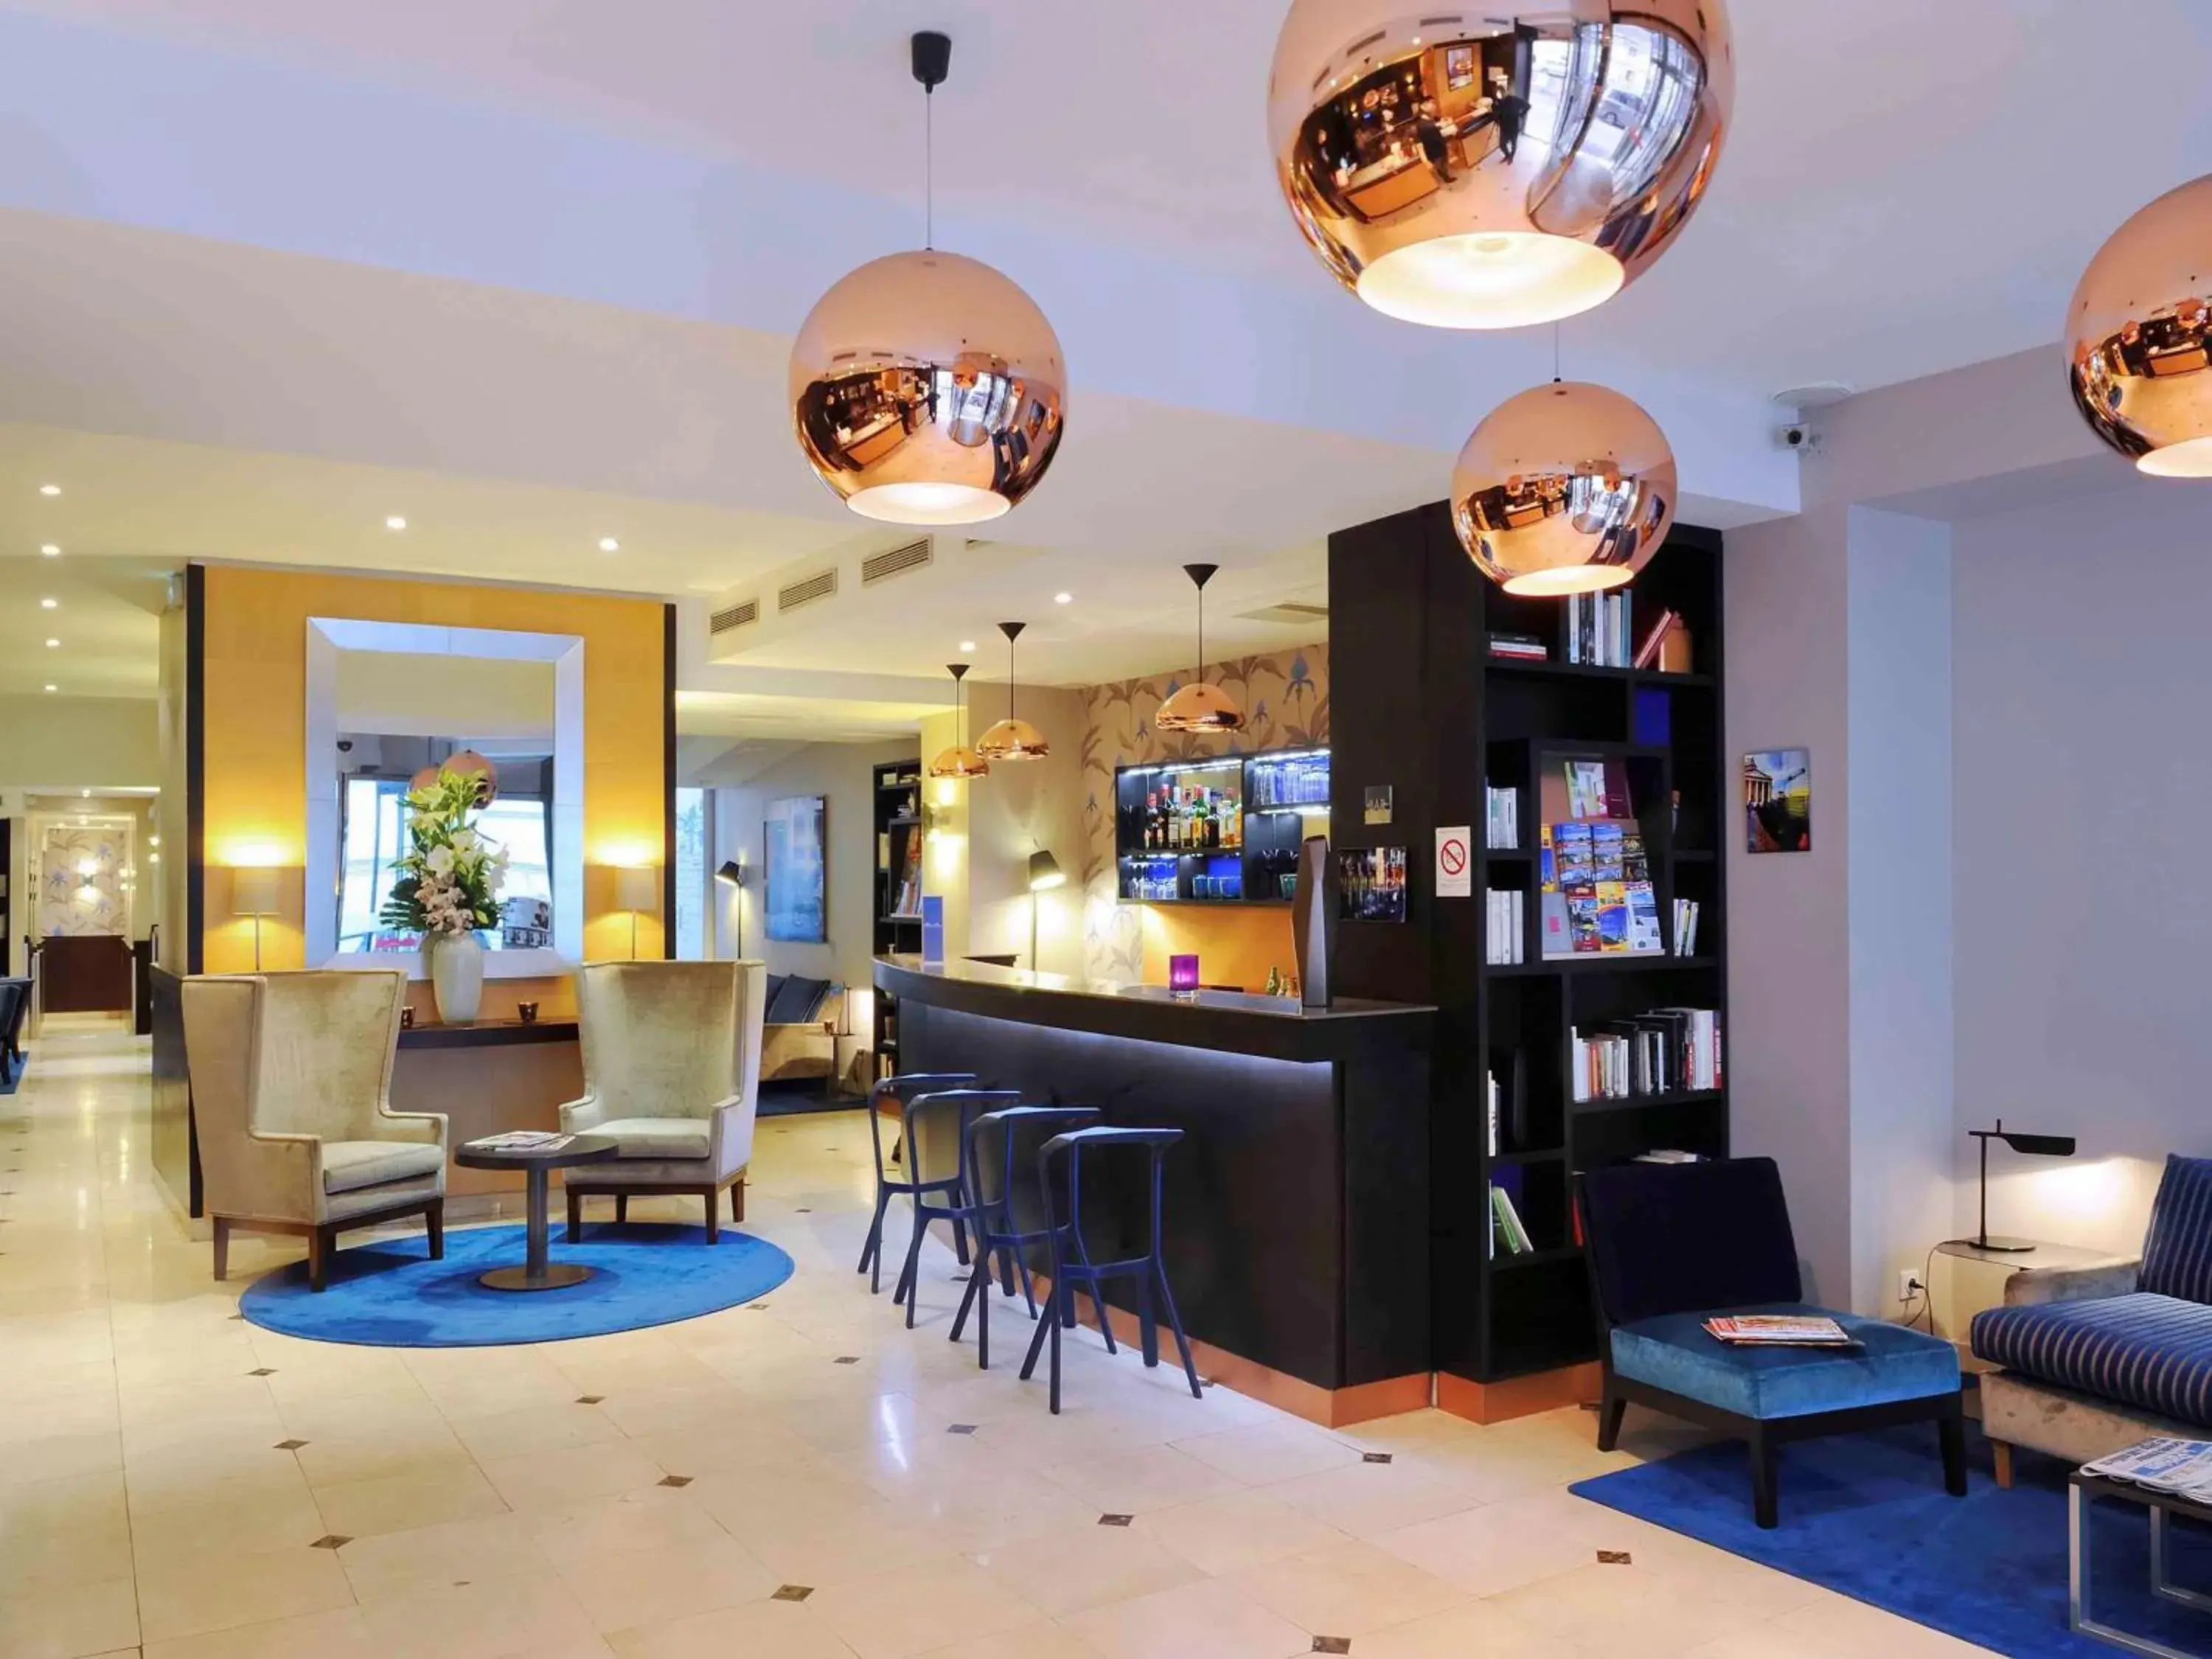 Lounge or bar, Lobby/Reception in Mercure Paris La Sorbonne Saint Germain des Pres Hotel